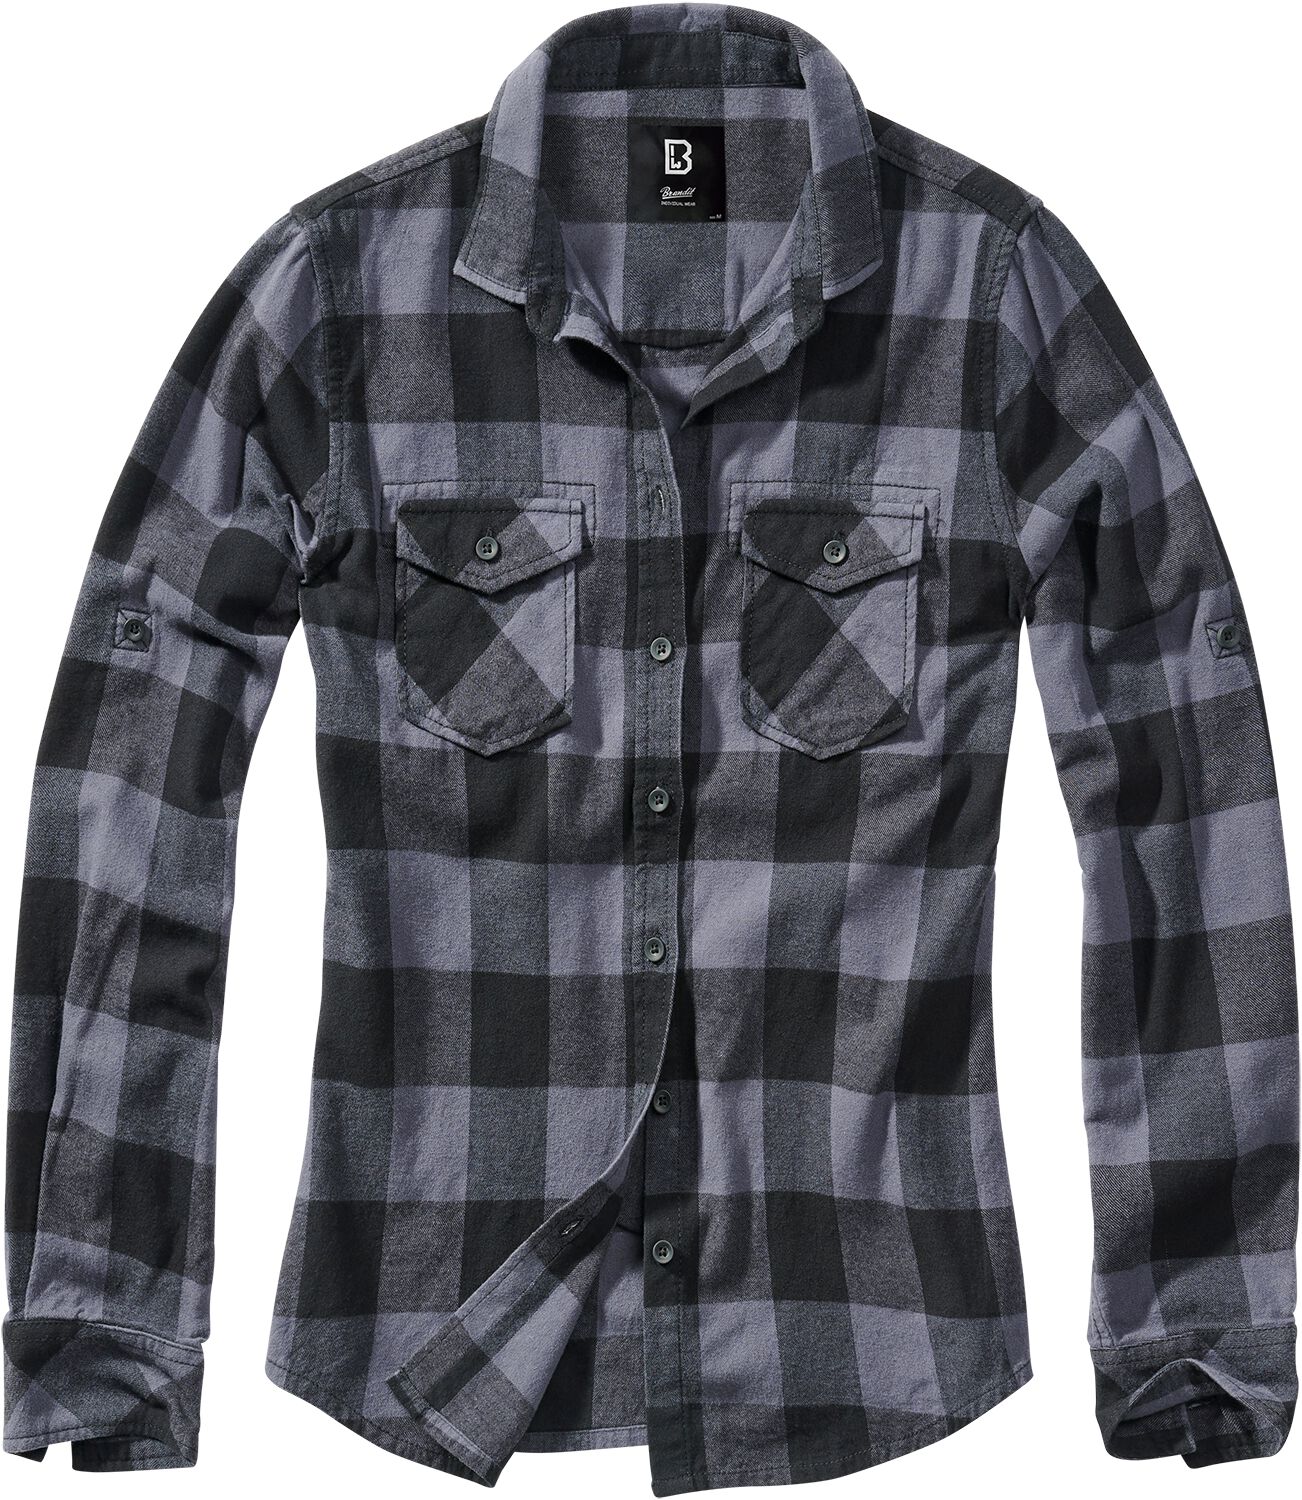 Brandit Flanellhemd - Amy Flanell Checkshirt - XXL bis 5XL - für Damen - Größe 5XL - schwarz/grau